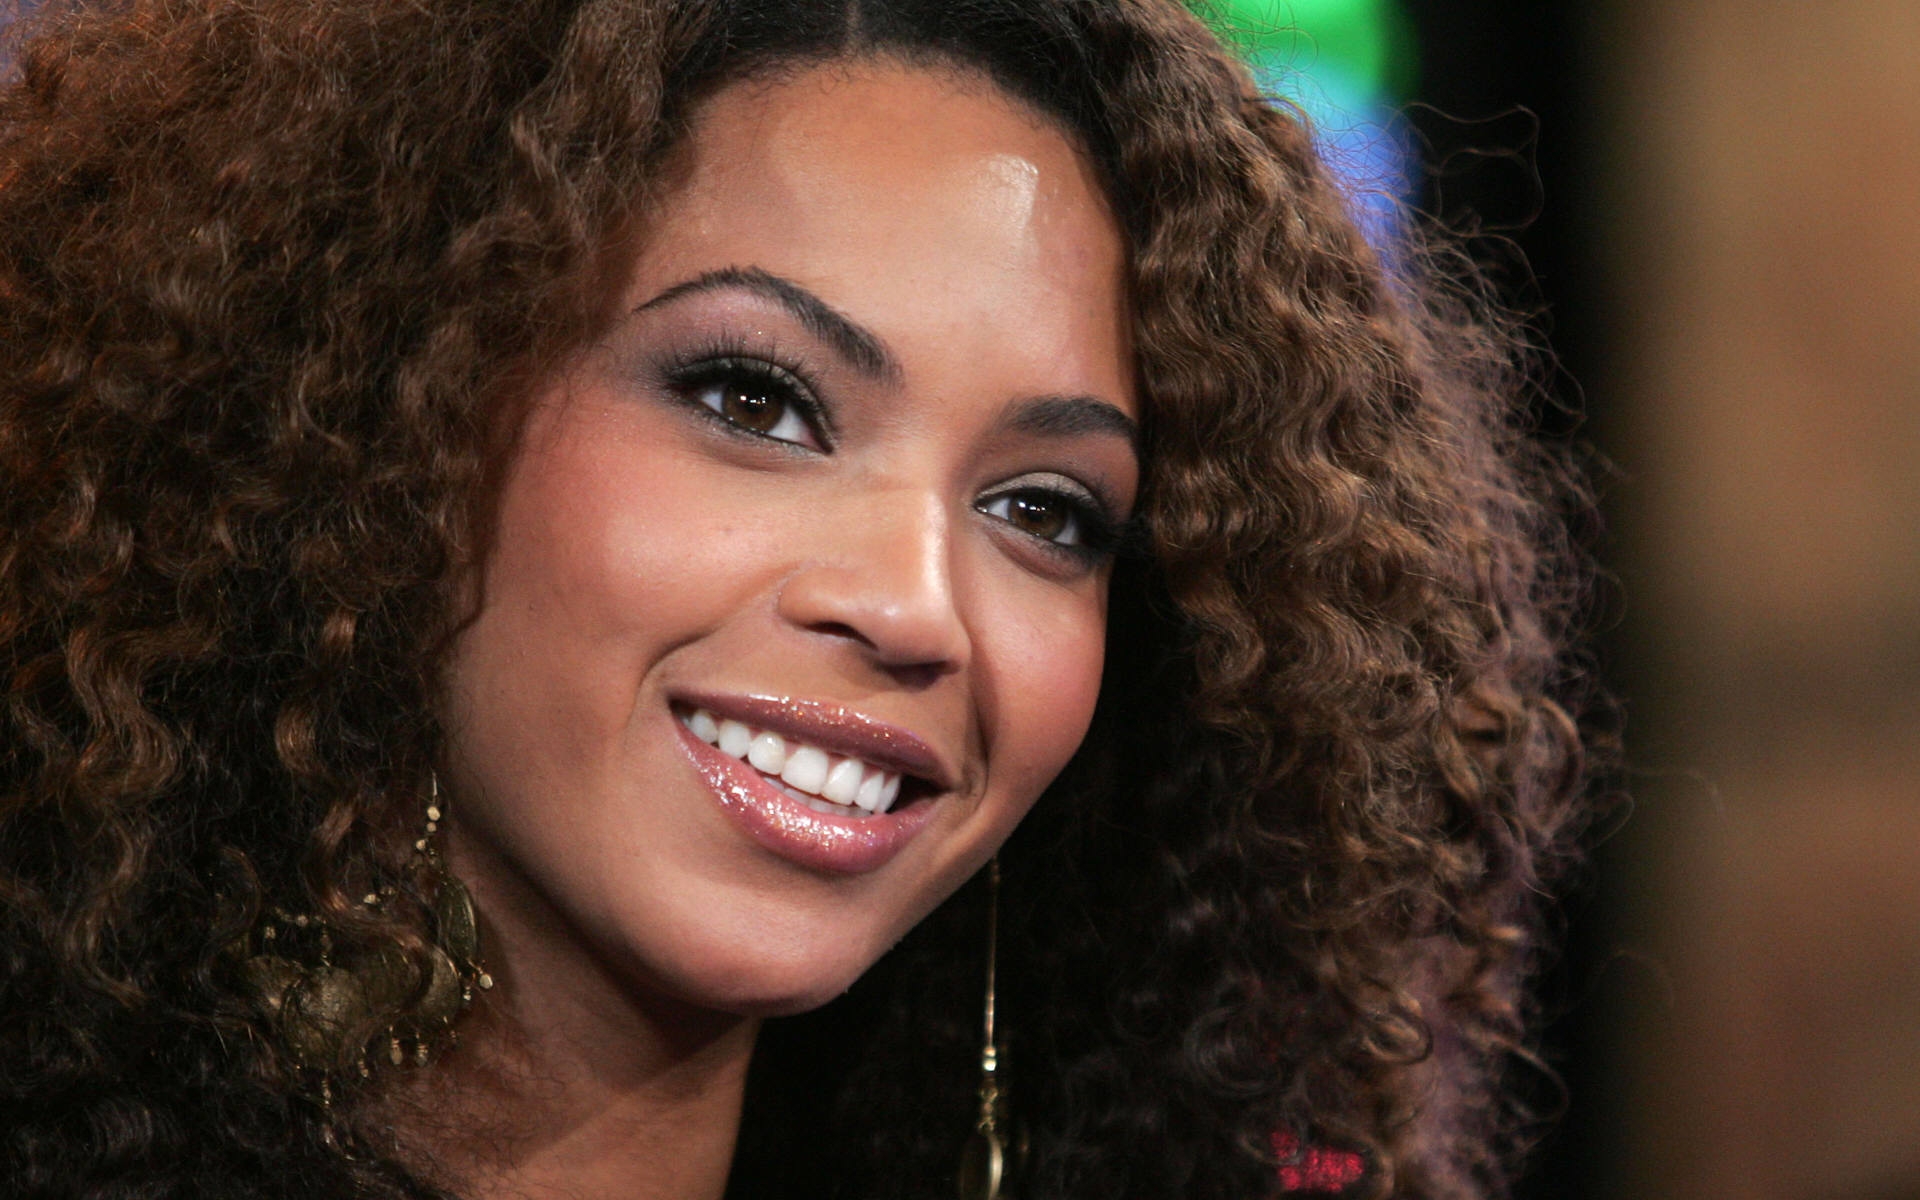 Картинки Beyonce, девушка, брюнетка, певец, улыбка, глаза фото и обои на рабочий стол